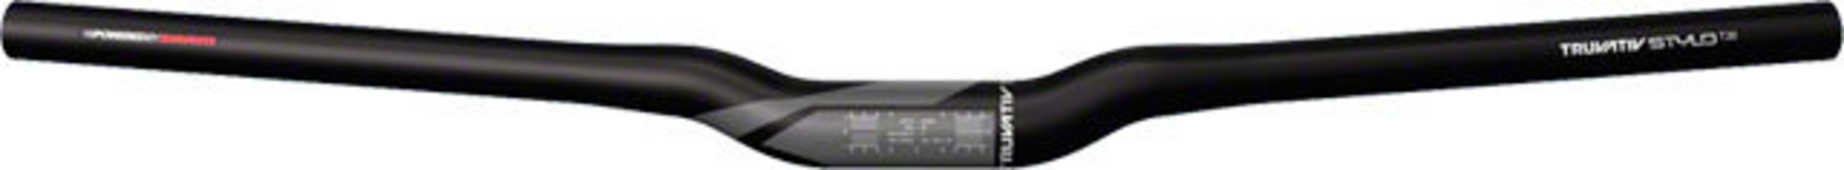 Styre Truvativ Stylo T20 Riser 20 31.8 mm 680 mm svart